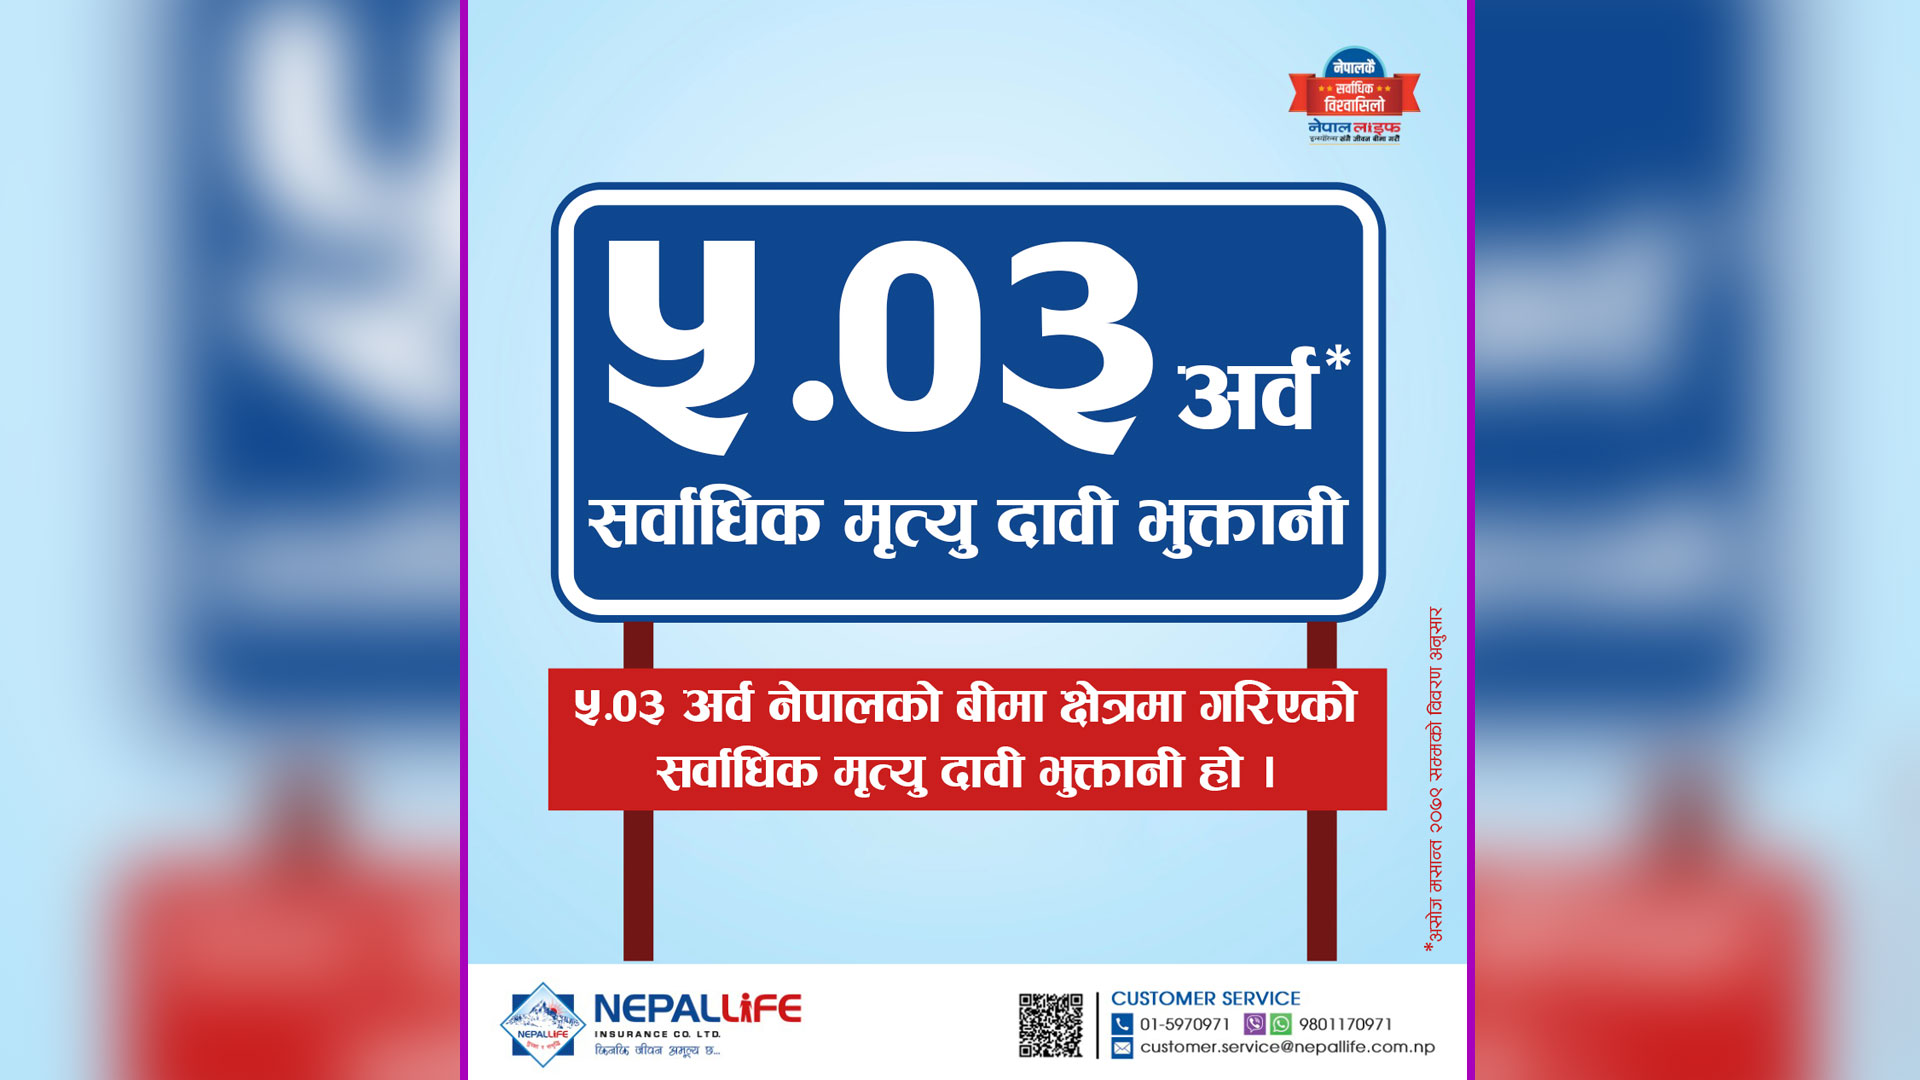 Nepal Life insurance